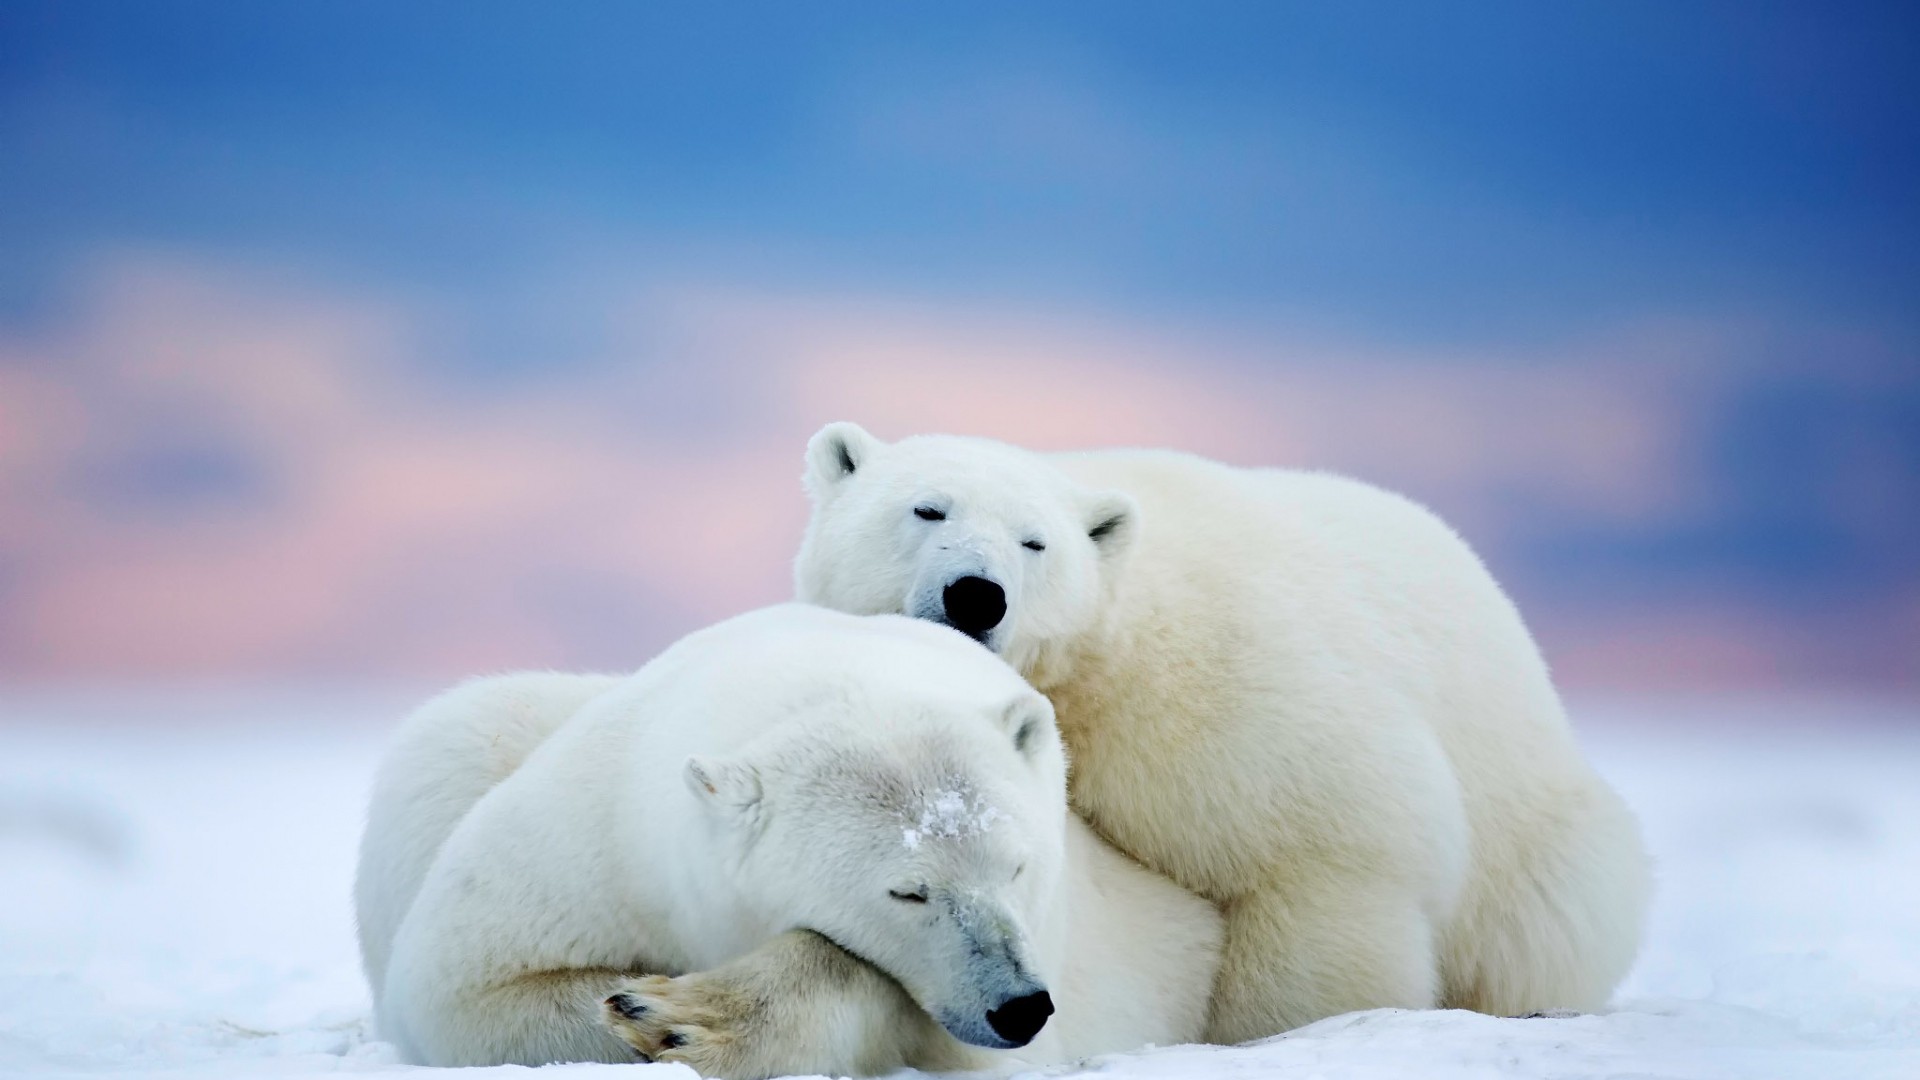 General 1920x1080 bears winter polar bears animals mammals sleeping relaxing